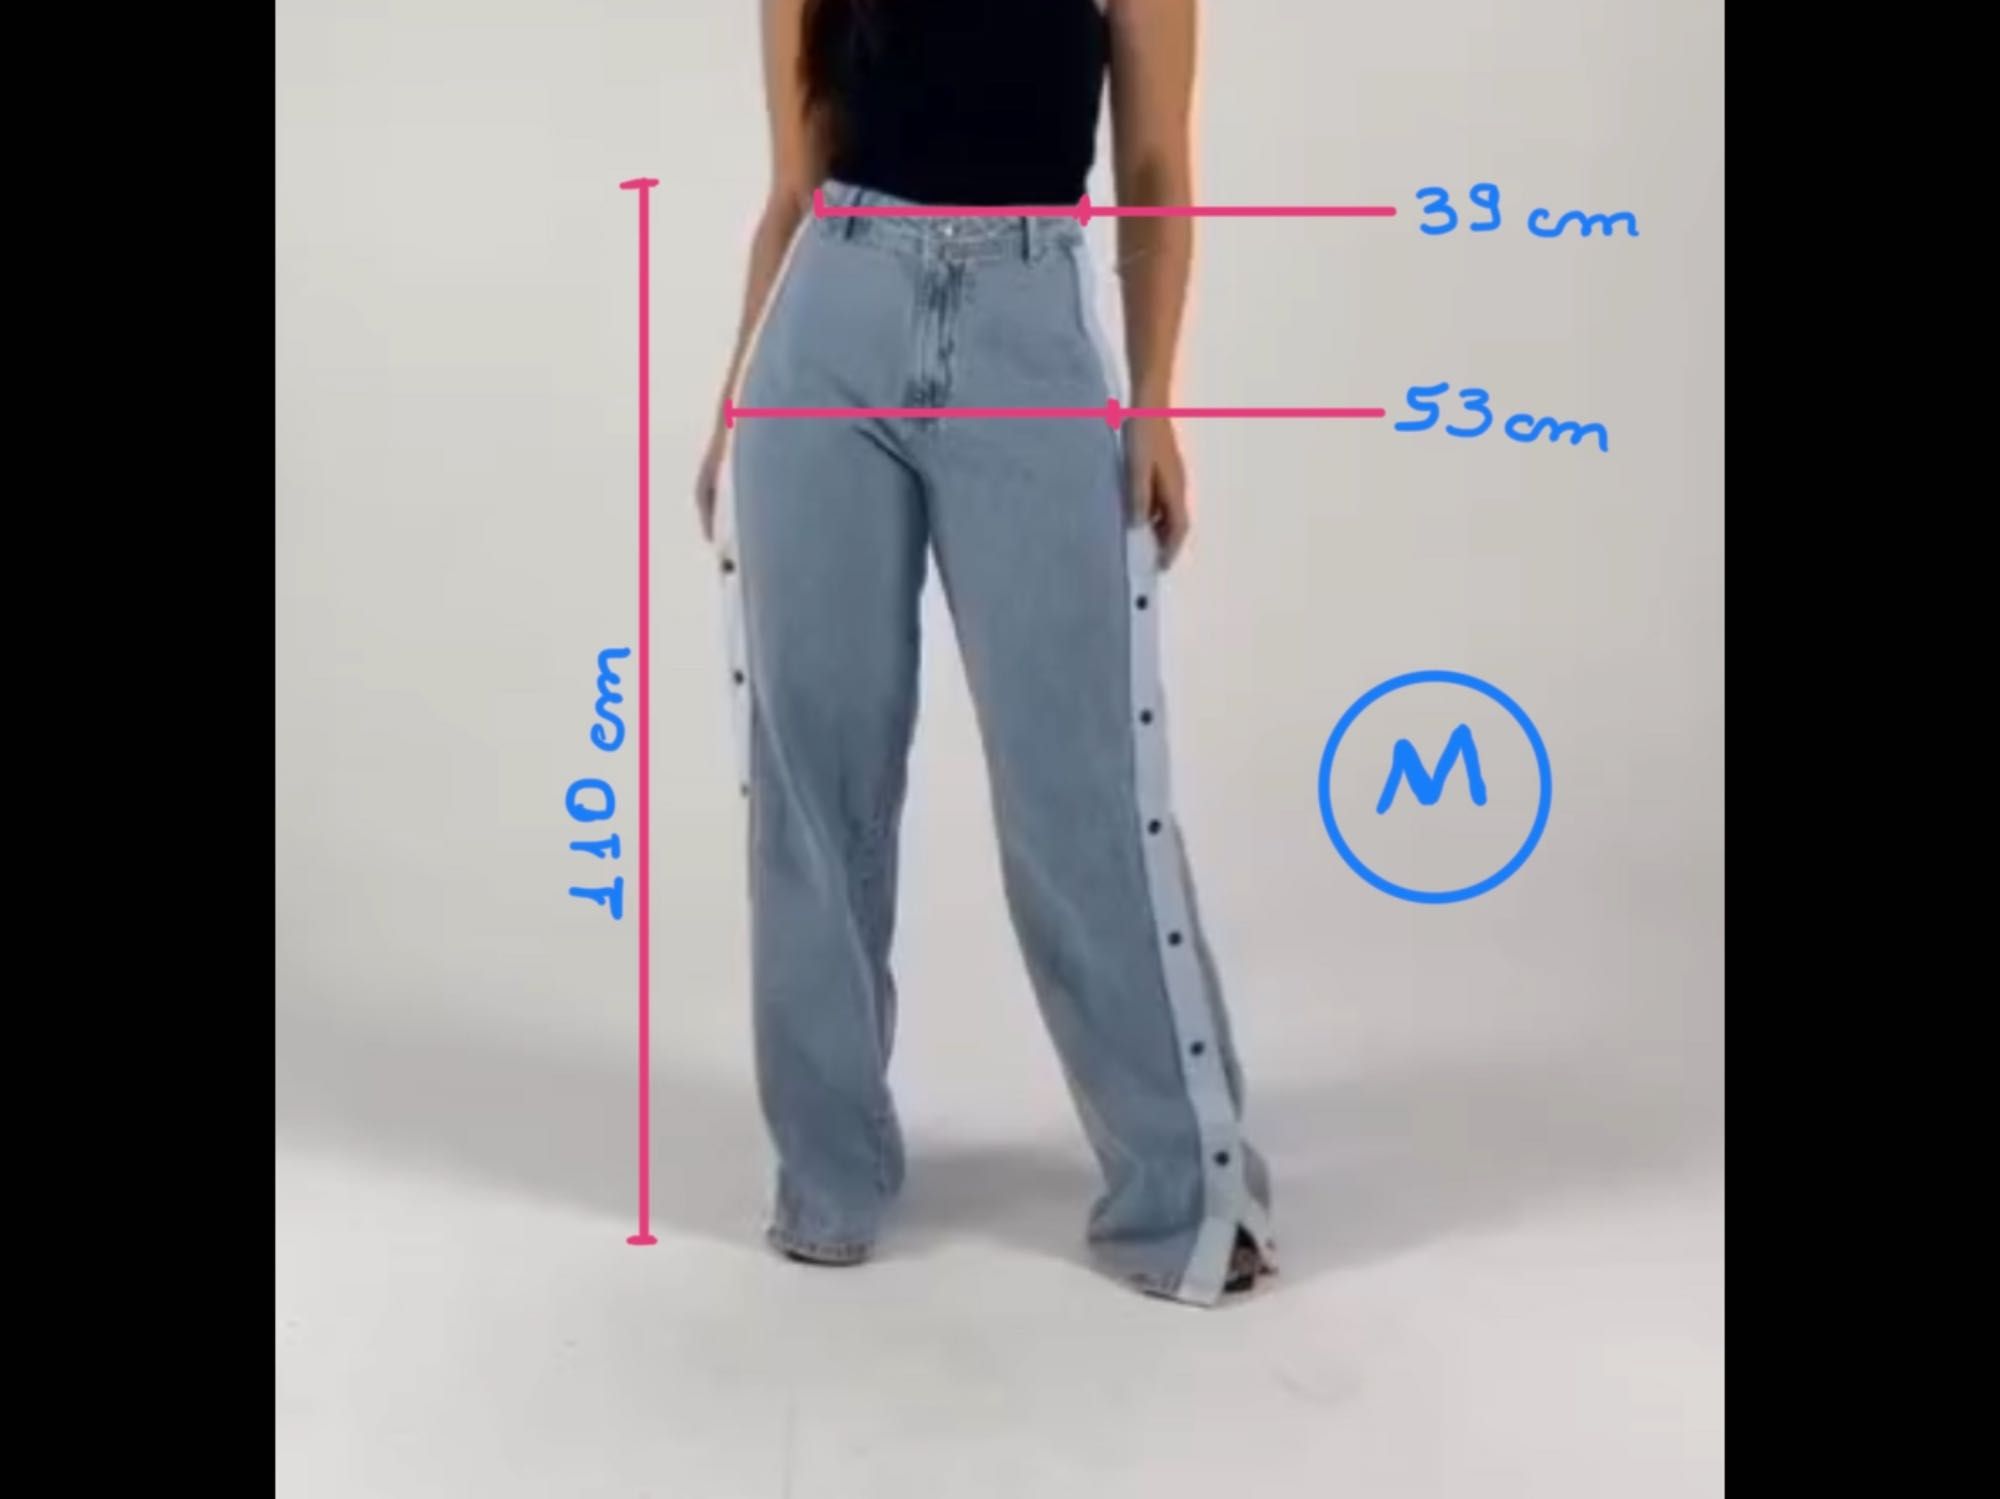 Calças novas Jeans Wid Leg modelagem brasileira M, L, e XL